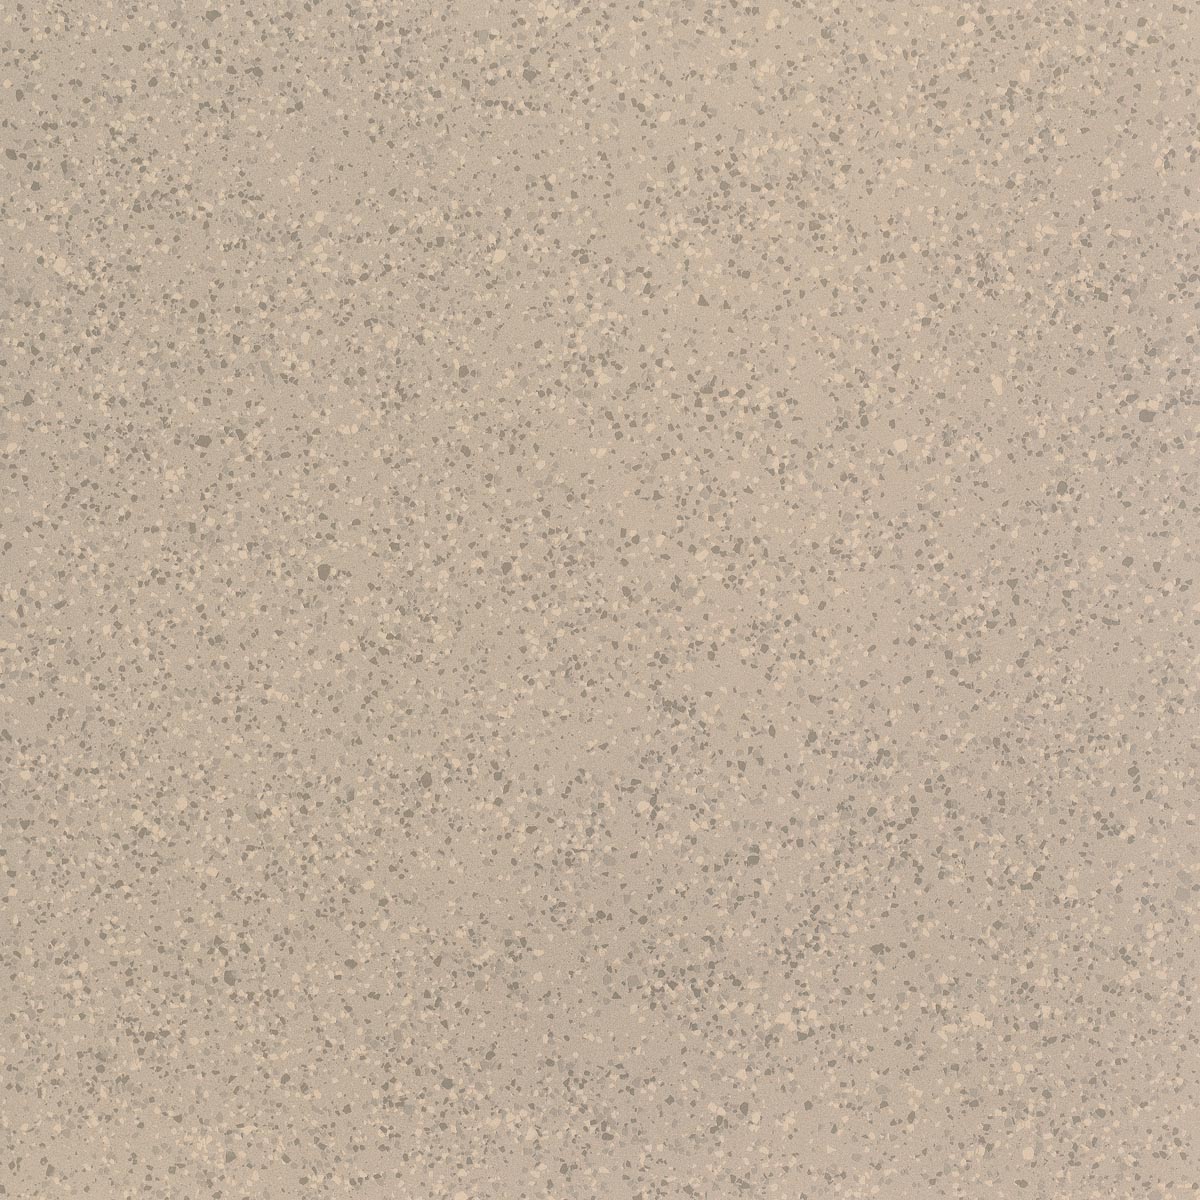 Imola Parade Beige Natural Flat Matt Beige 166071 glatt matt natur 120x120cm rektifiziert 10,5mm